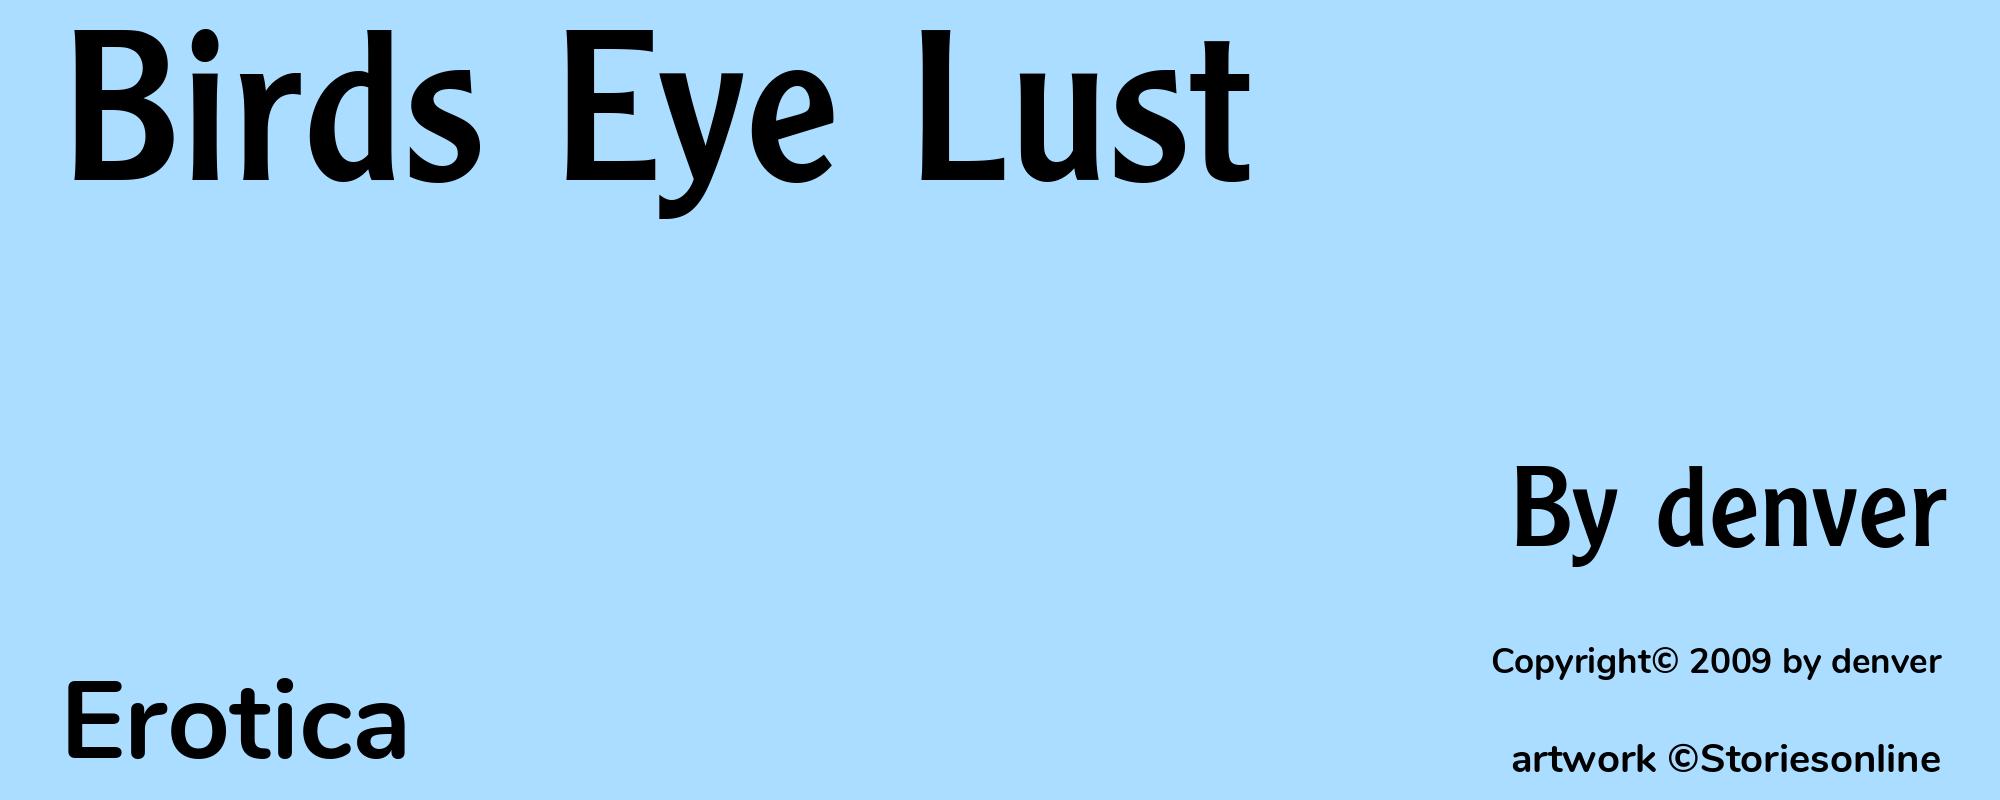 Birds Eye Lust - Cover